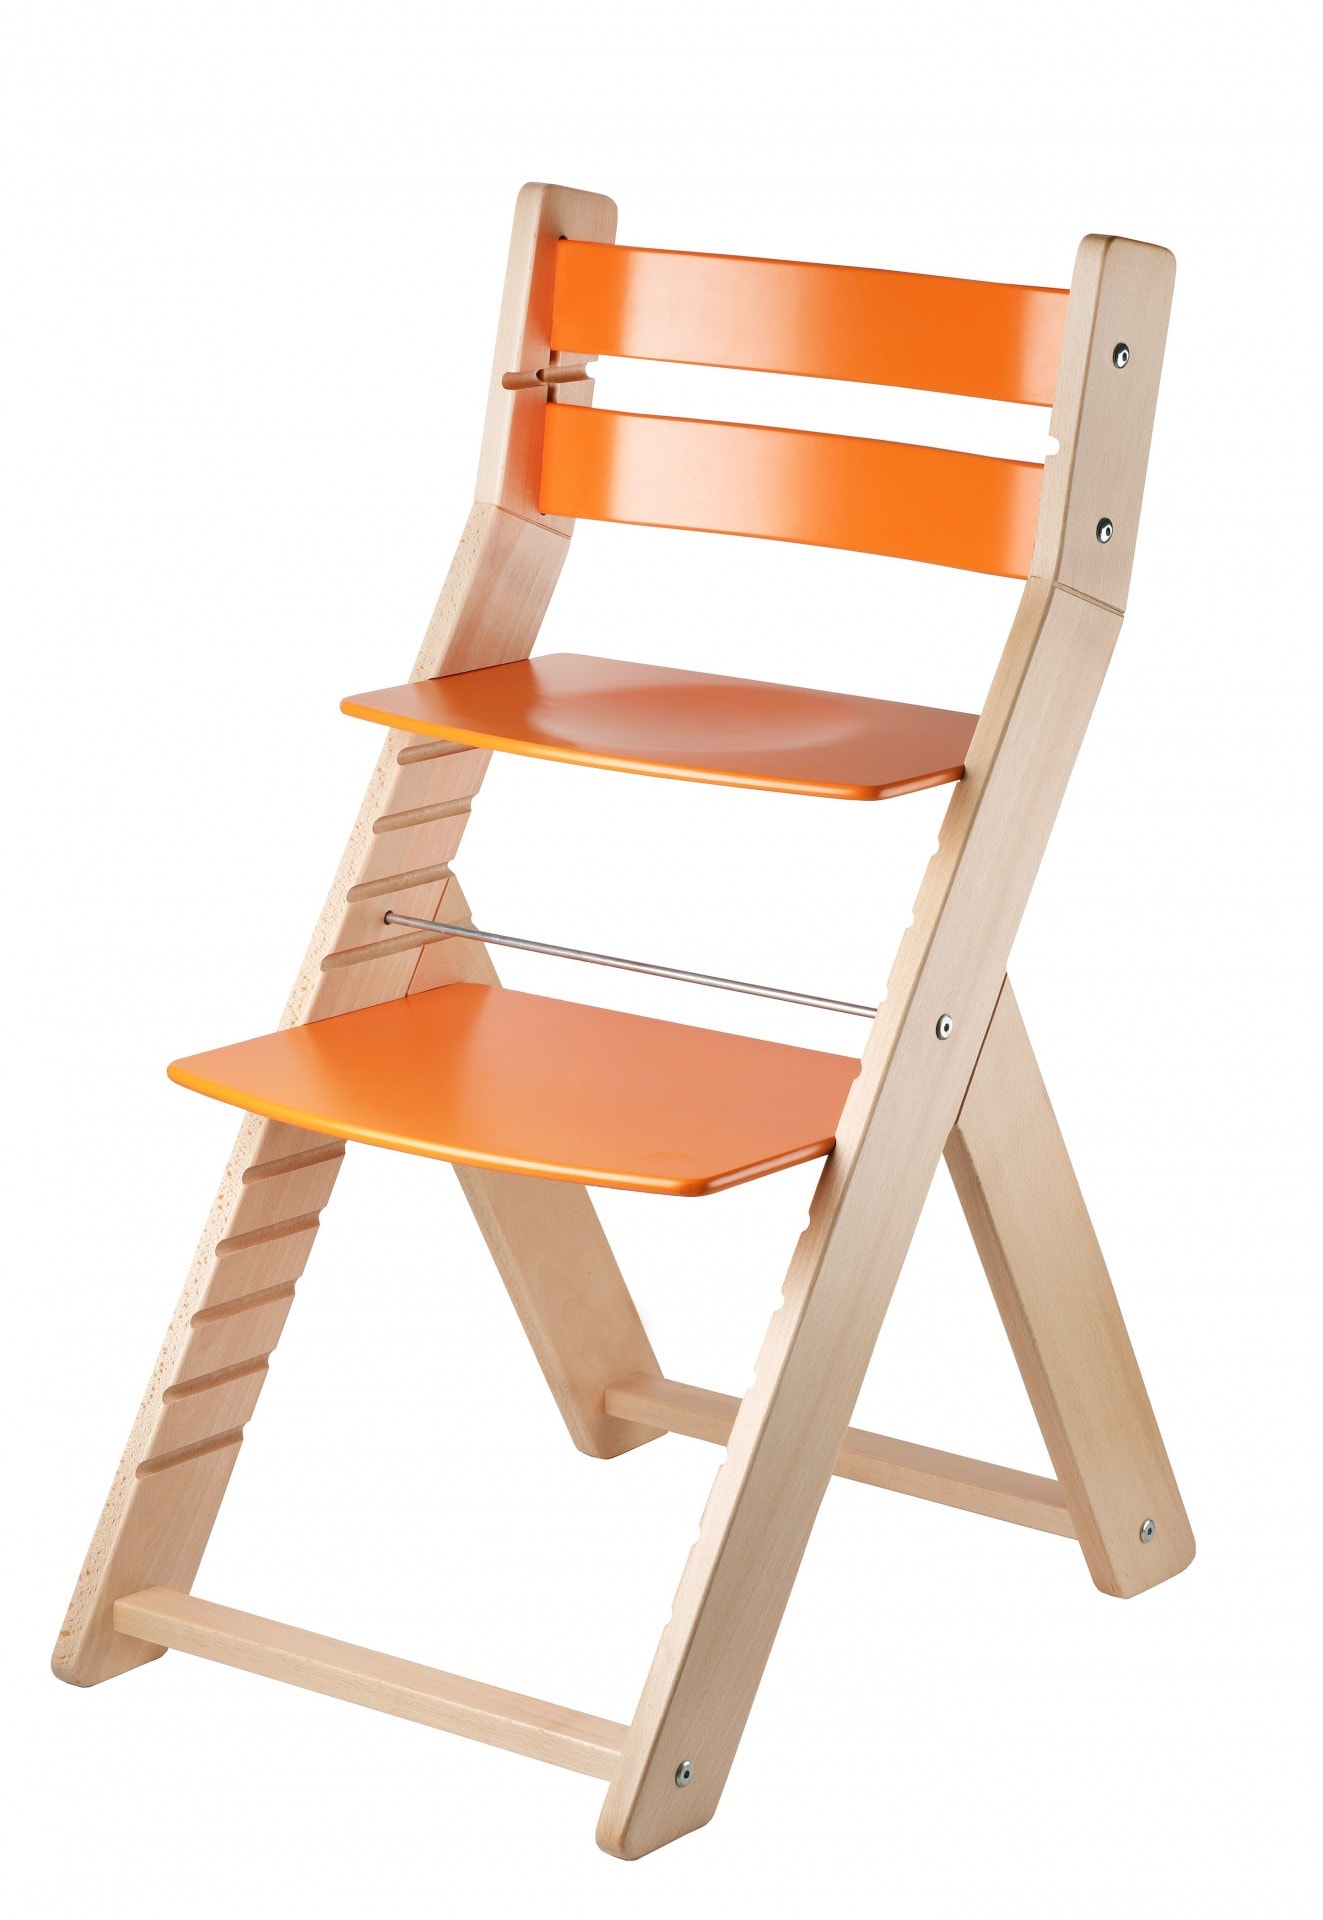 Wood Partner Rostoucí židle Sandy - natur lak / oranžová